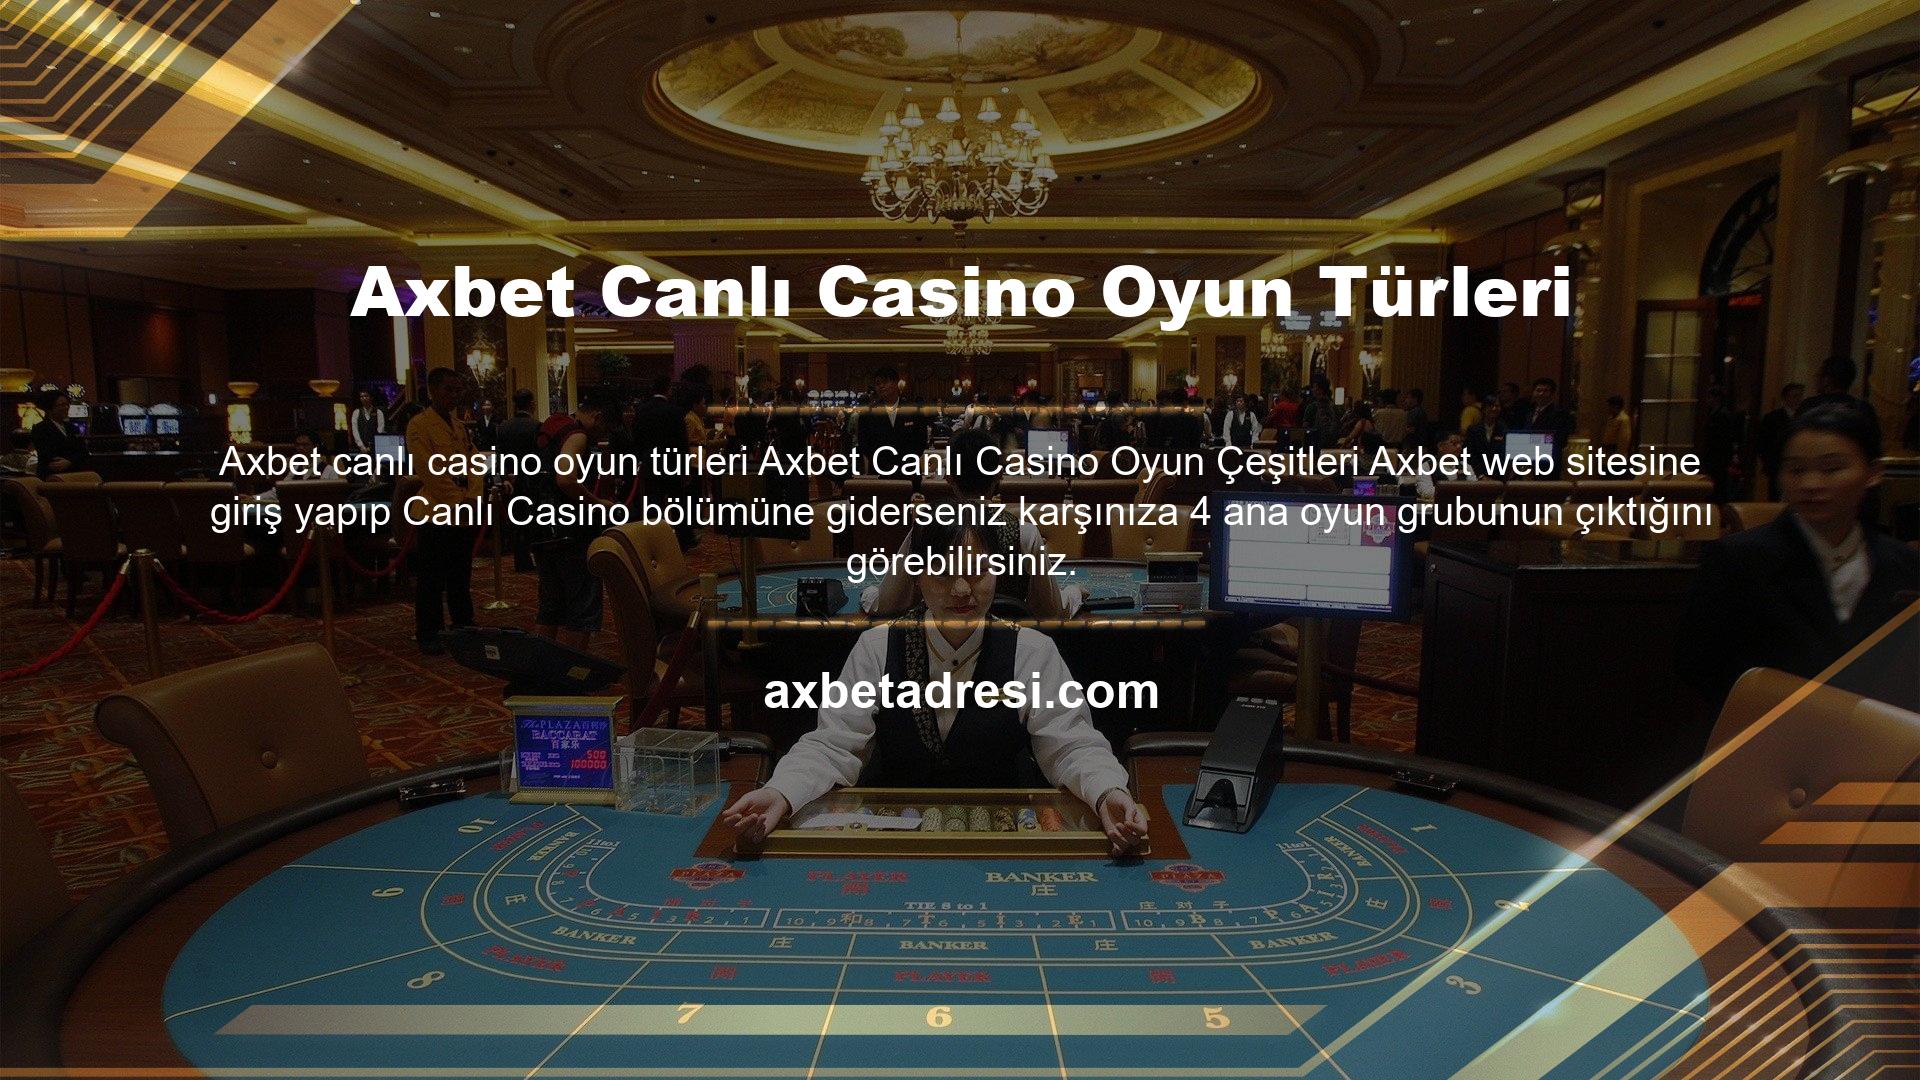 Axbet canlı casino oyunlarının dört ana kategorisi nelerdir? Soru bununla ilgili